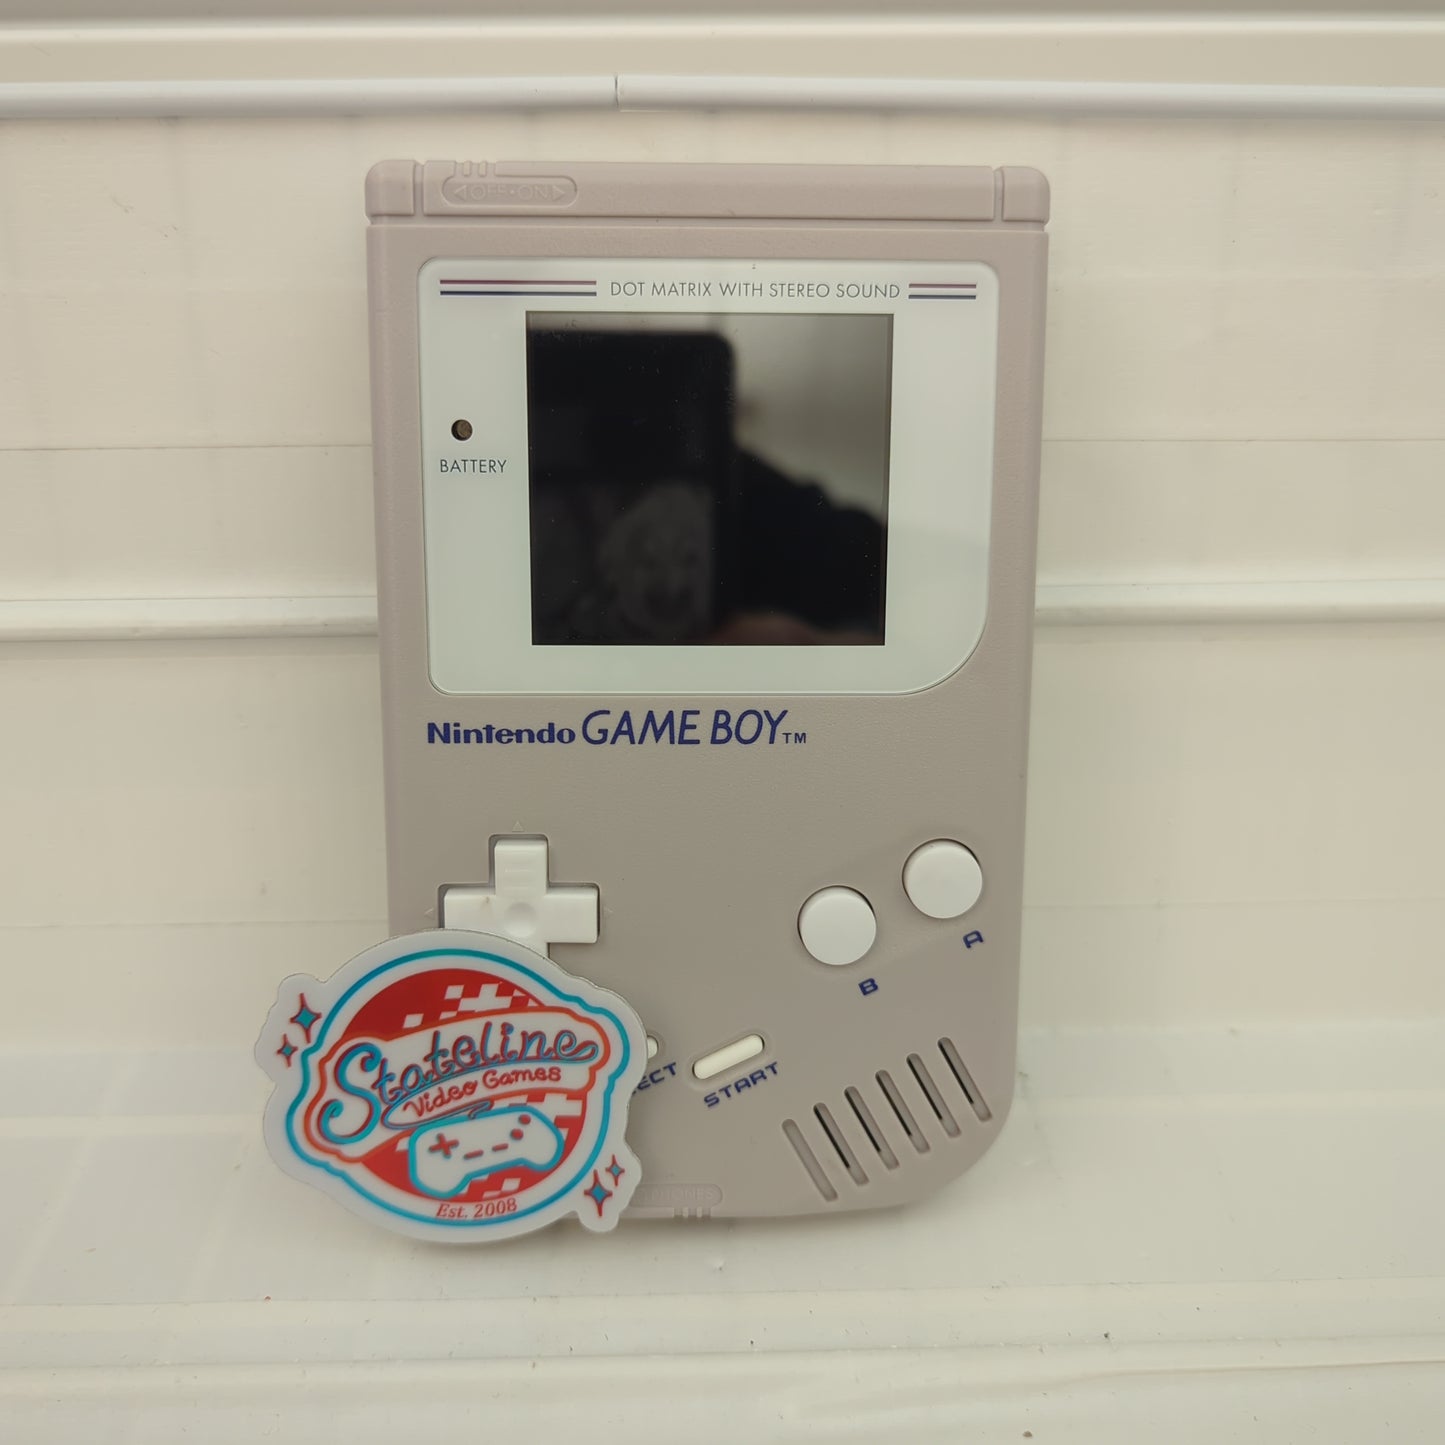 Modded Original GameBoy Console - GameBoy